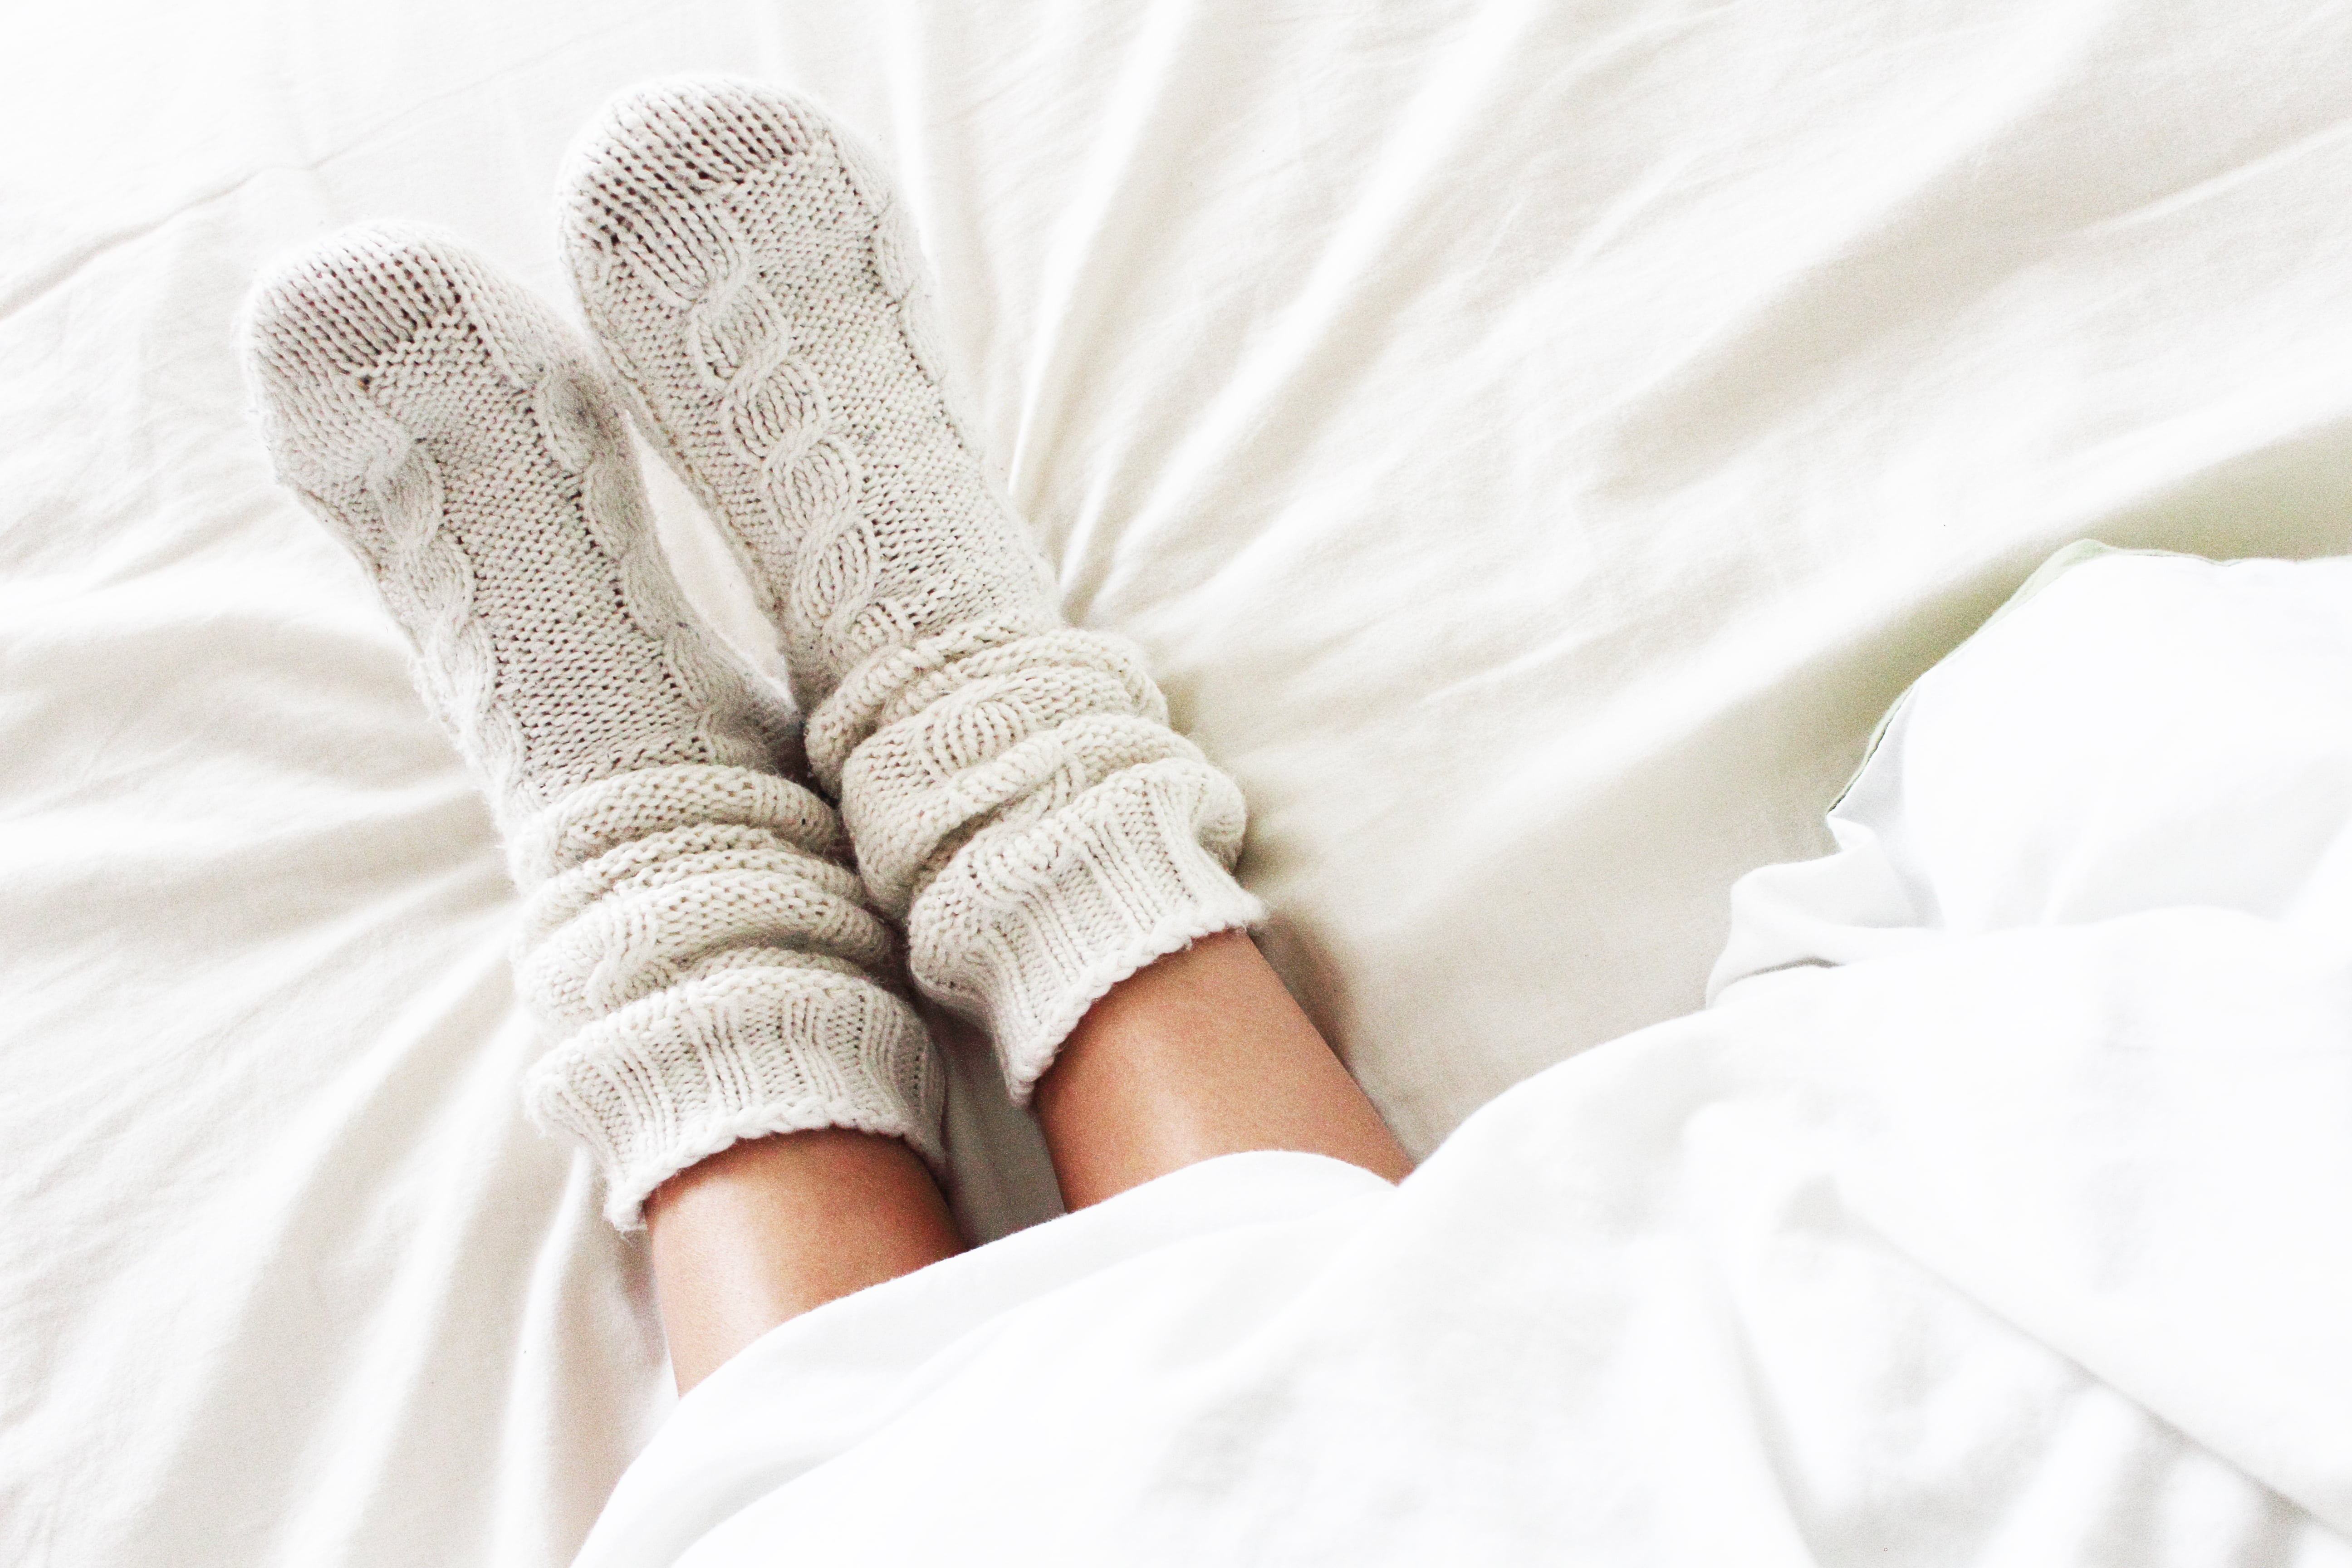 Trucos para dormir sin pasar frio (ni calor) en la cama